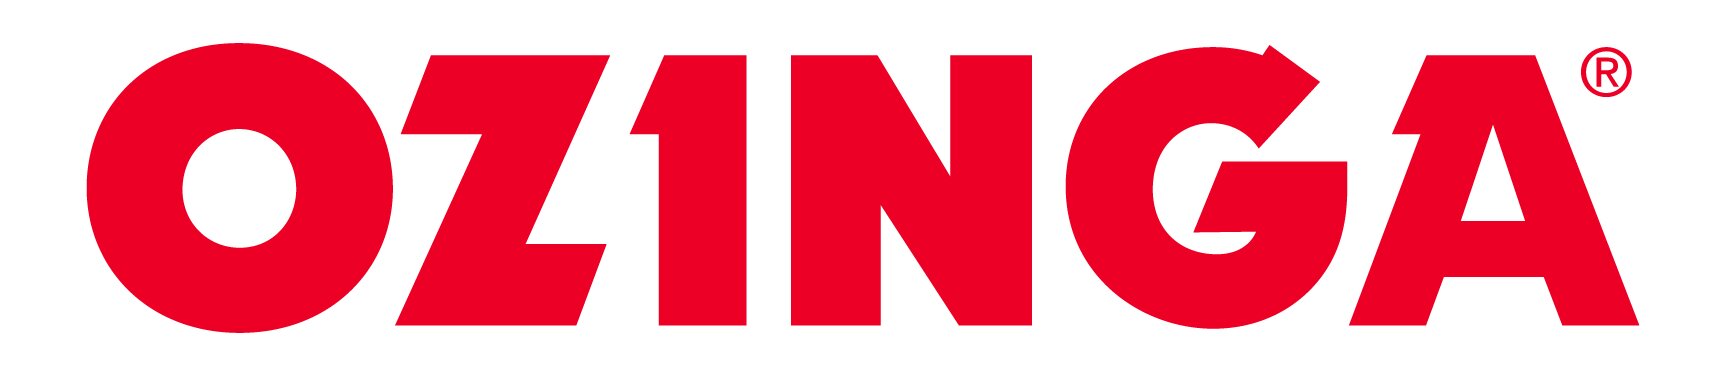 Ozinga-Logo.jpeg